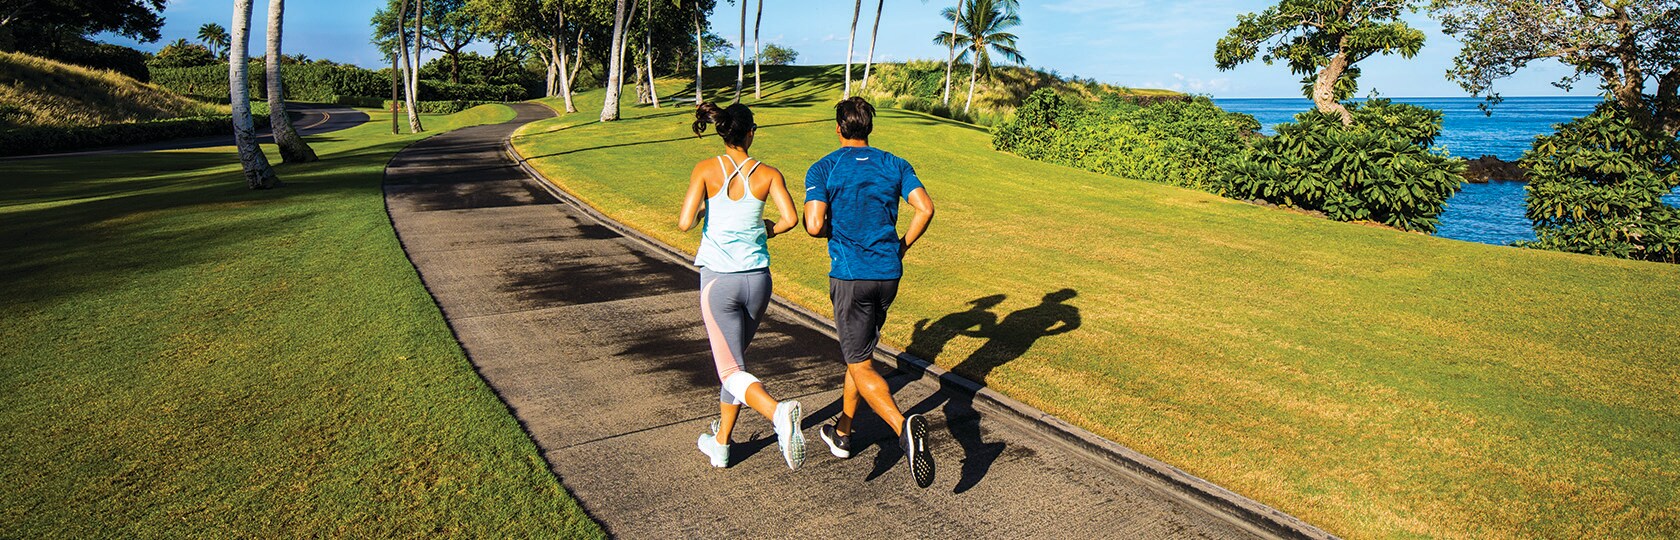 hombre y mujer corriendo por un camino junto a un césped verde con el océano y palmeras al fondo